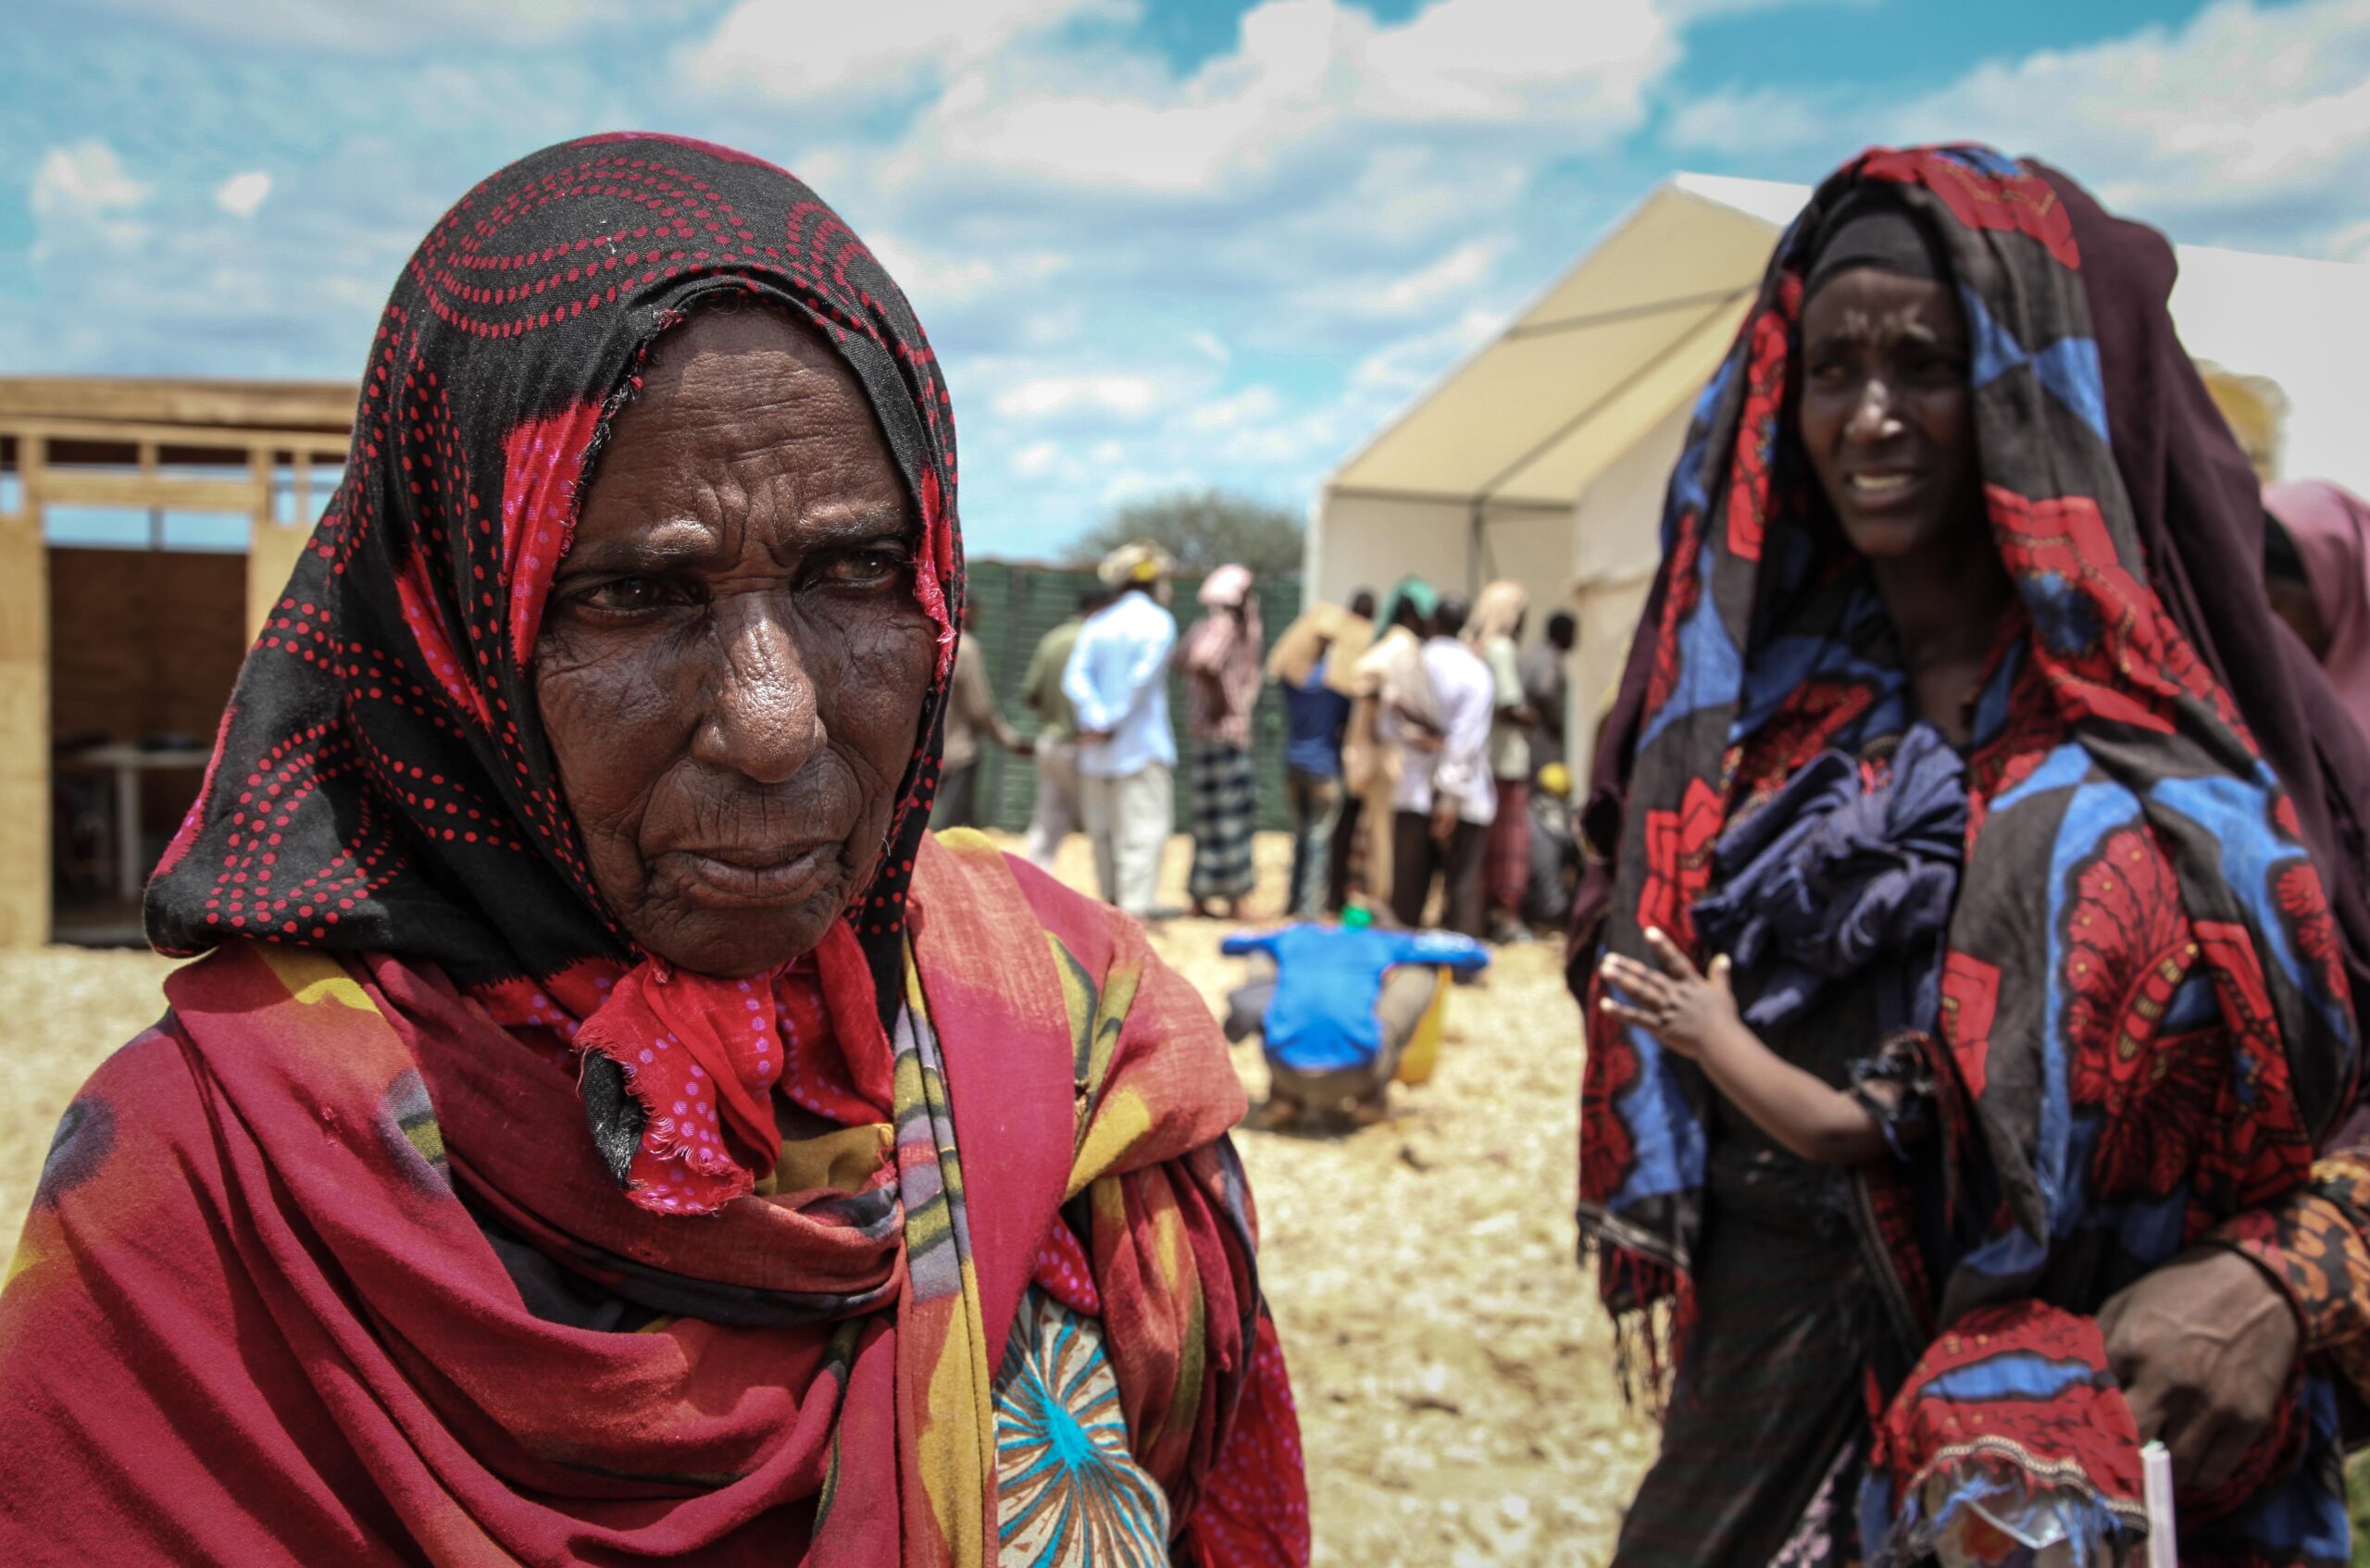 Imagen de la noticia Mitigar los efectos de la pandemia C19 en la precaria salud de las mujeres refugiadas en Dajla fortaleciendo la capacidad de respuesta local bajo criterios de la norma humanitaria esencial y en pro del alcance de los ODS